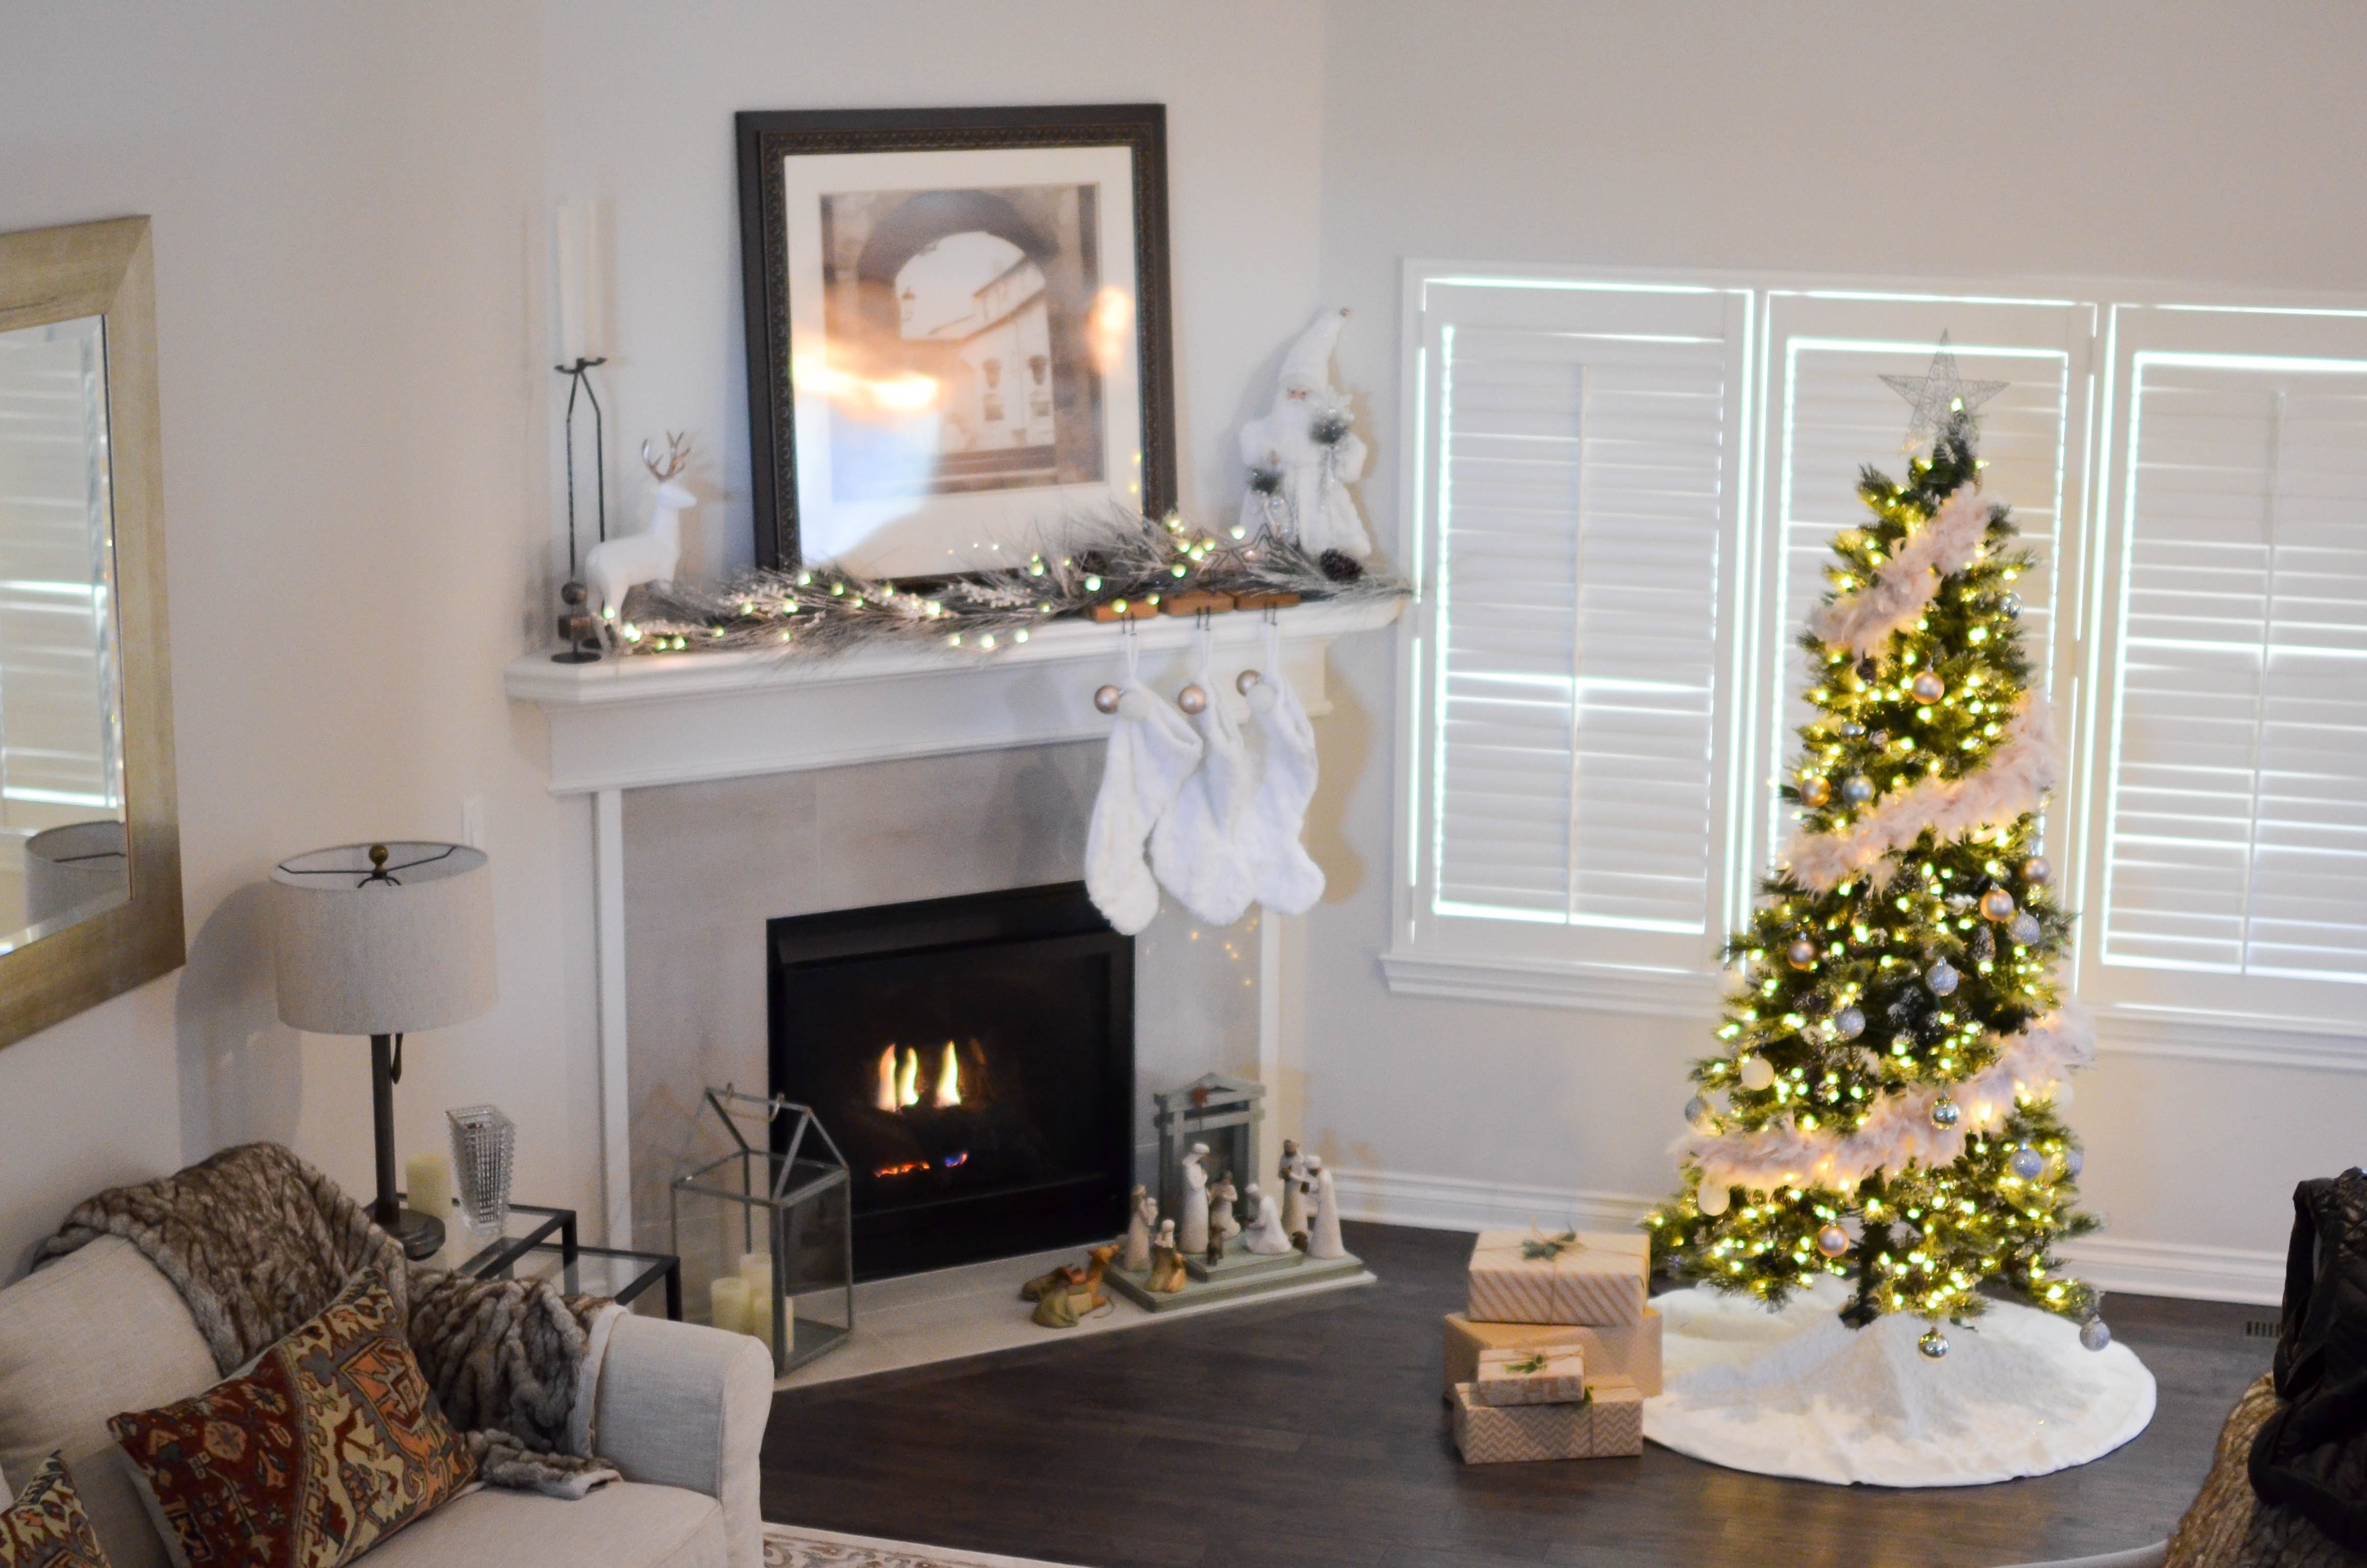 Aproveite o natal deste ano para decorar a casa com os estilos rosé gold, escandinavo, rústico ou tradicional (Foto: Pexels / Element5 Digital / CreativeCommons)